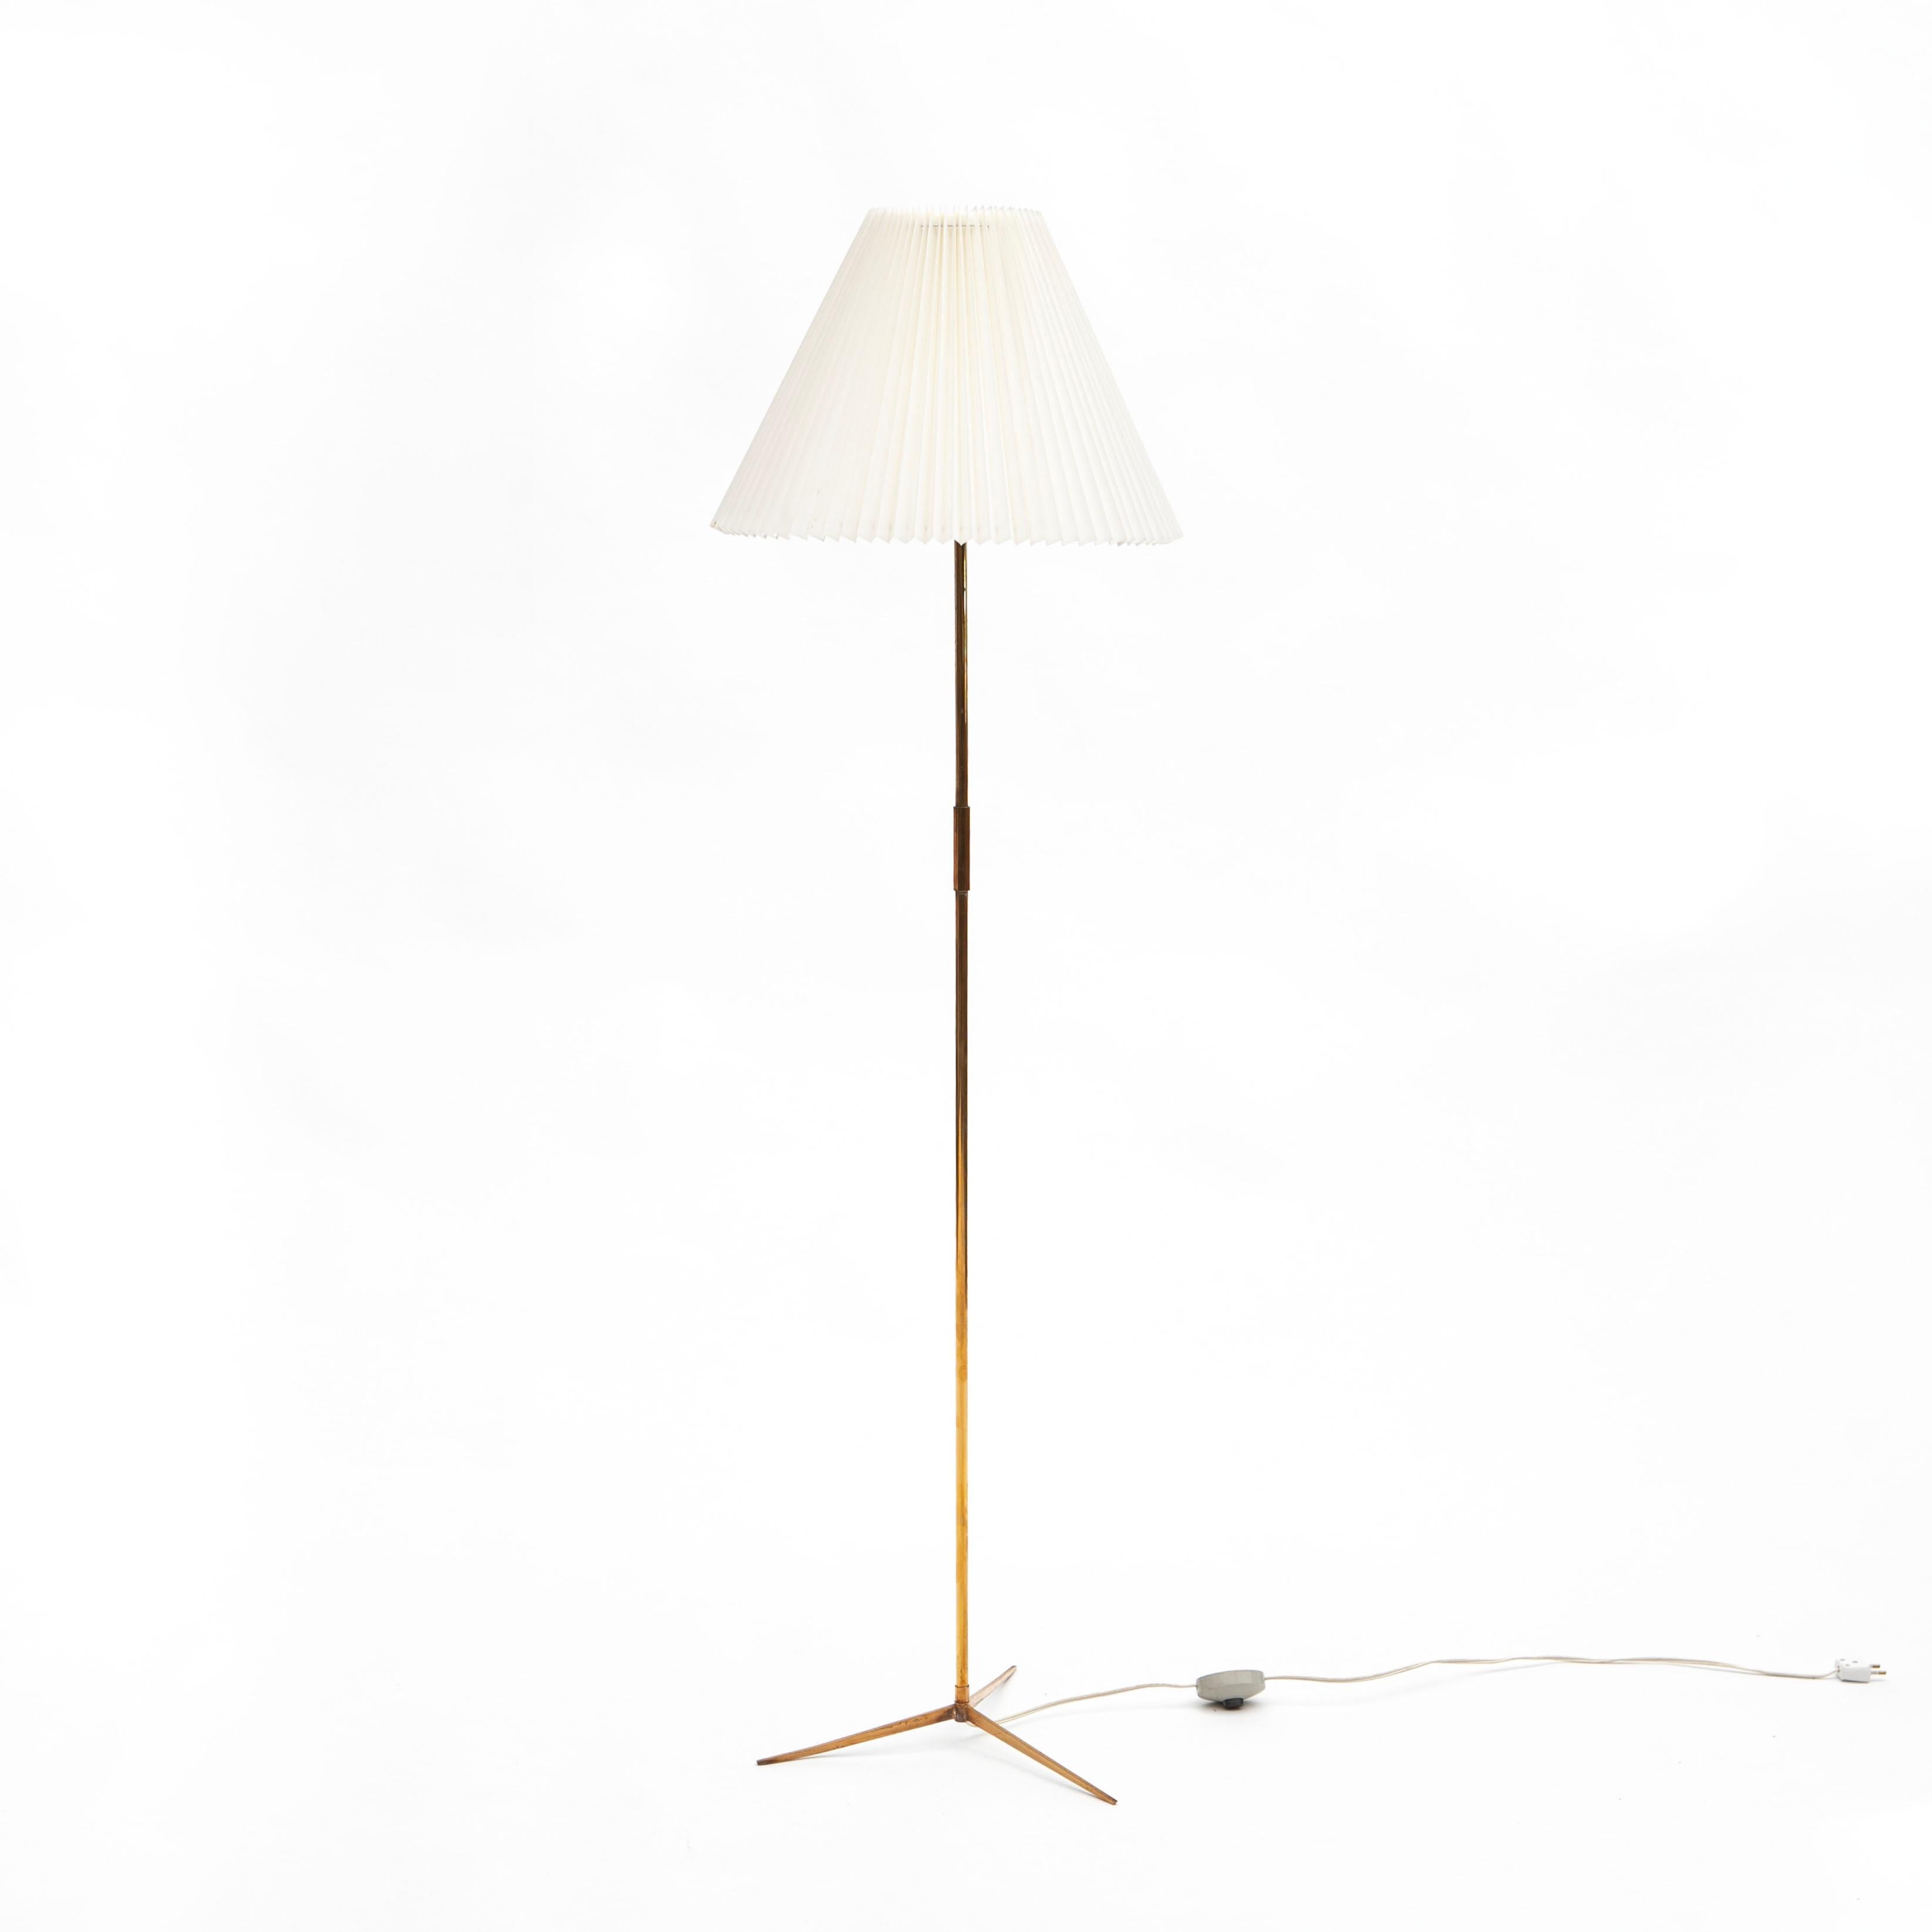 Elegant lampadaire en laiton de haute qualité conçu par AT&T. Valentiner. Produit par Poul Dinesen au Danemark, dans les années 1960.
Cette lampe était un cadeau de mariage acquis directement auprès du fabricant et de la Th. Valentiner, qui étaient